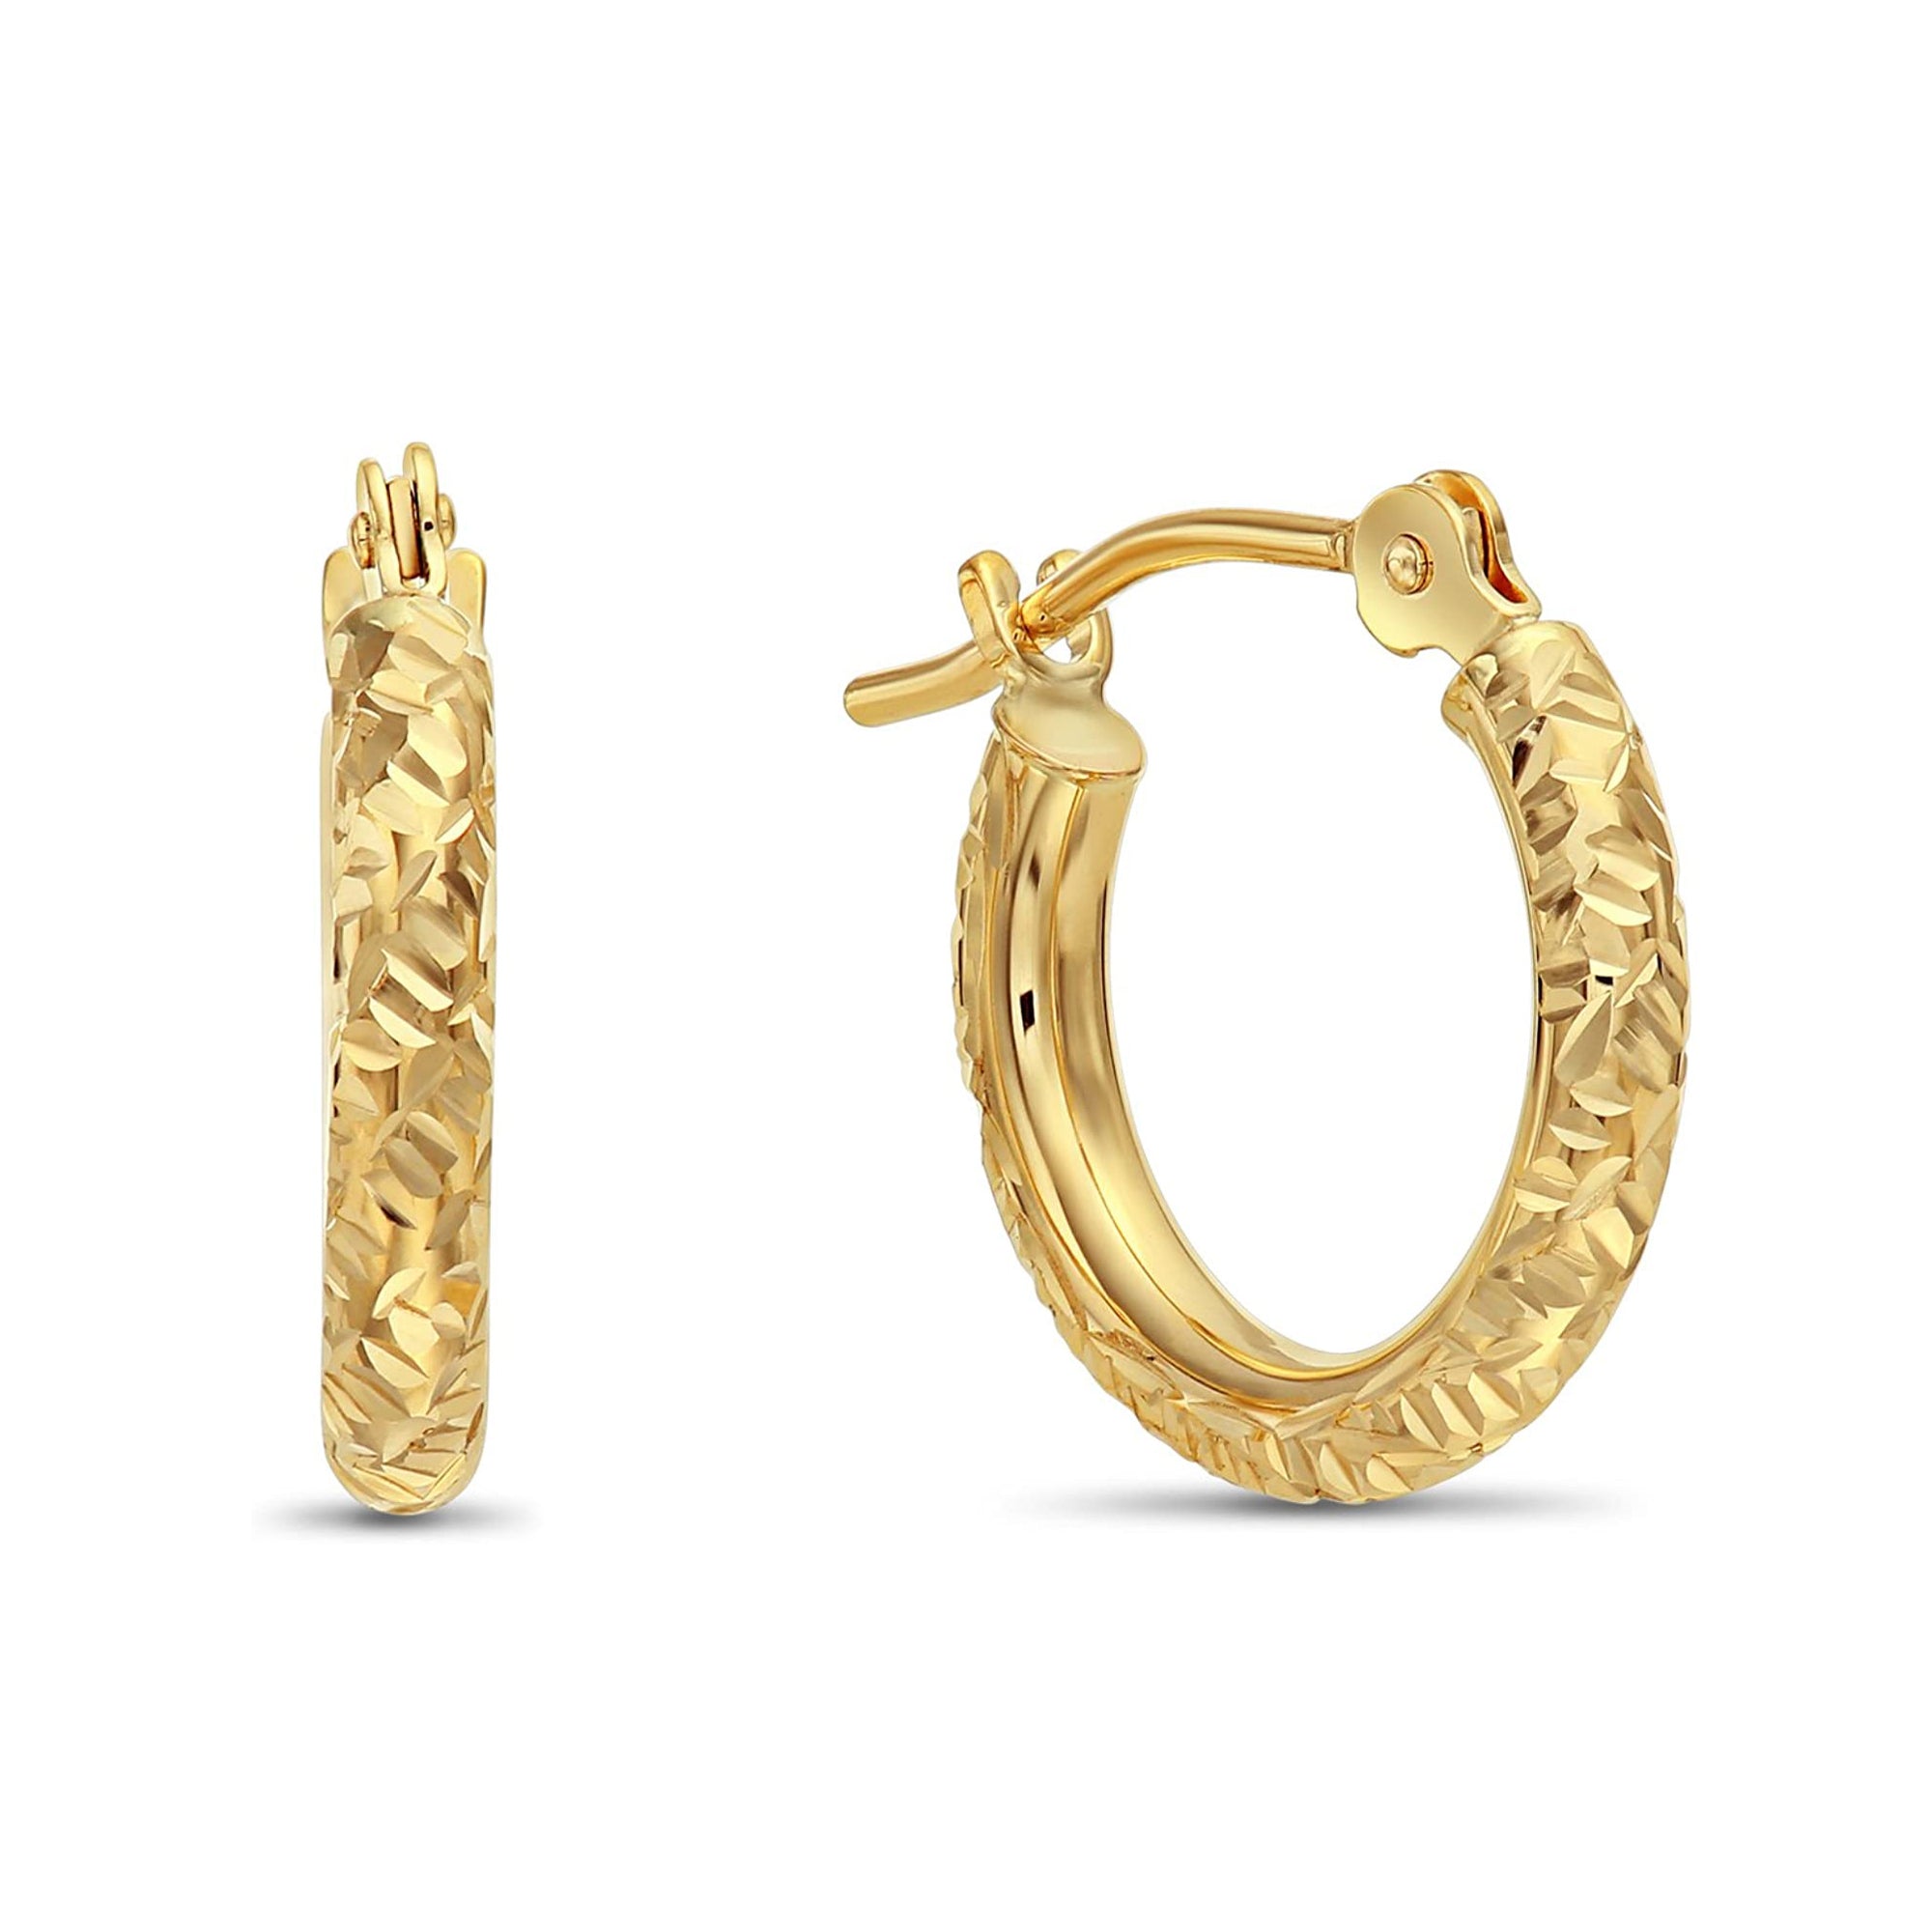 14k Gold Tornado Diamond Cut Hoop Earrings, 0.5 inch